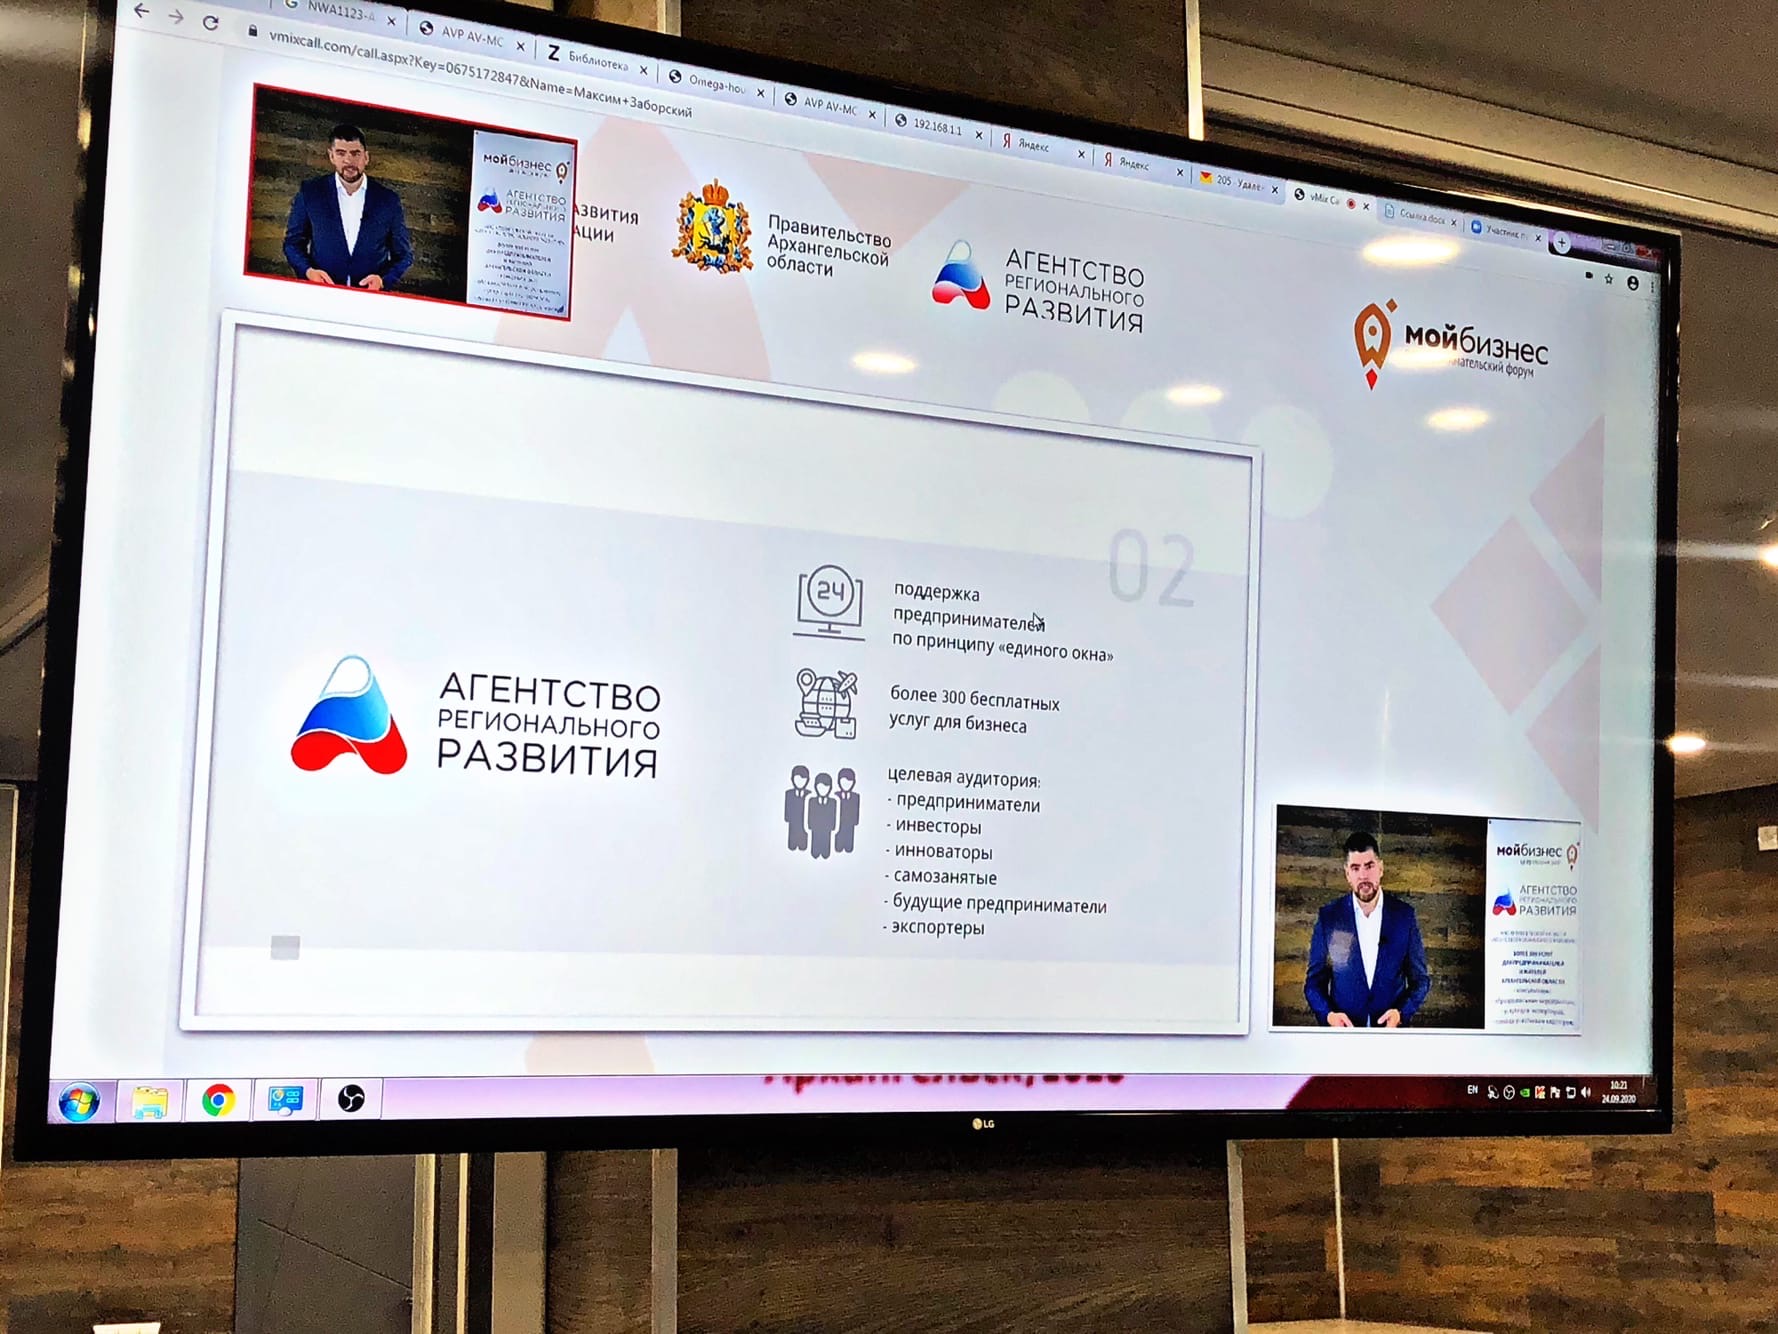 Более 3000 человек зарегистрировалось на форум "Мой бизнес" в Архангельске  